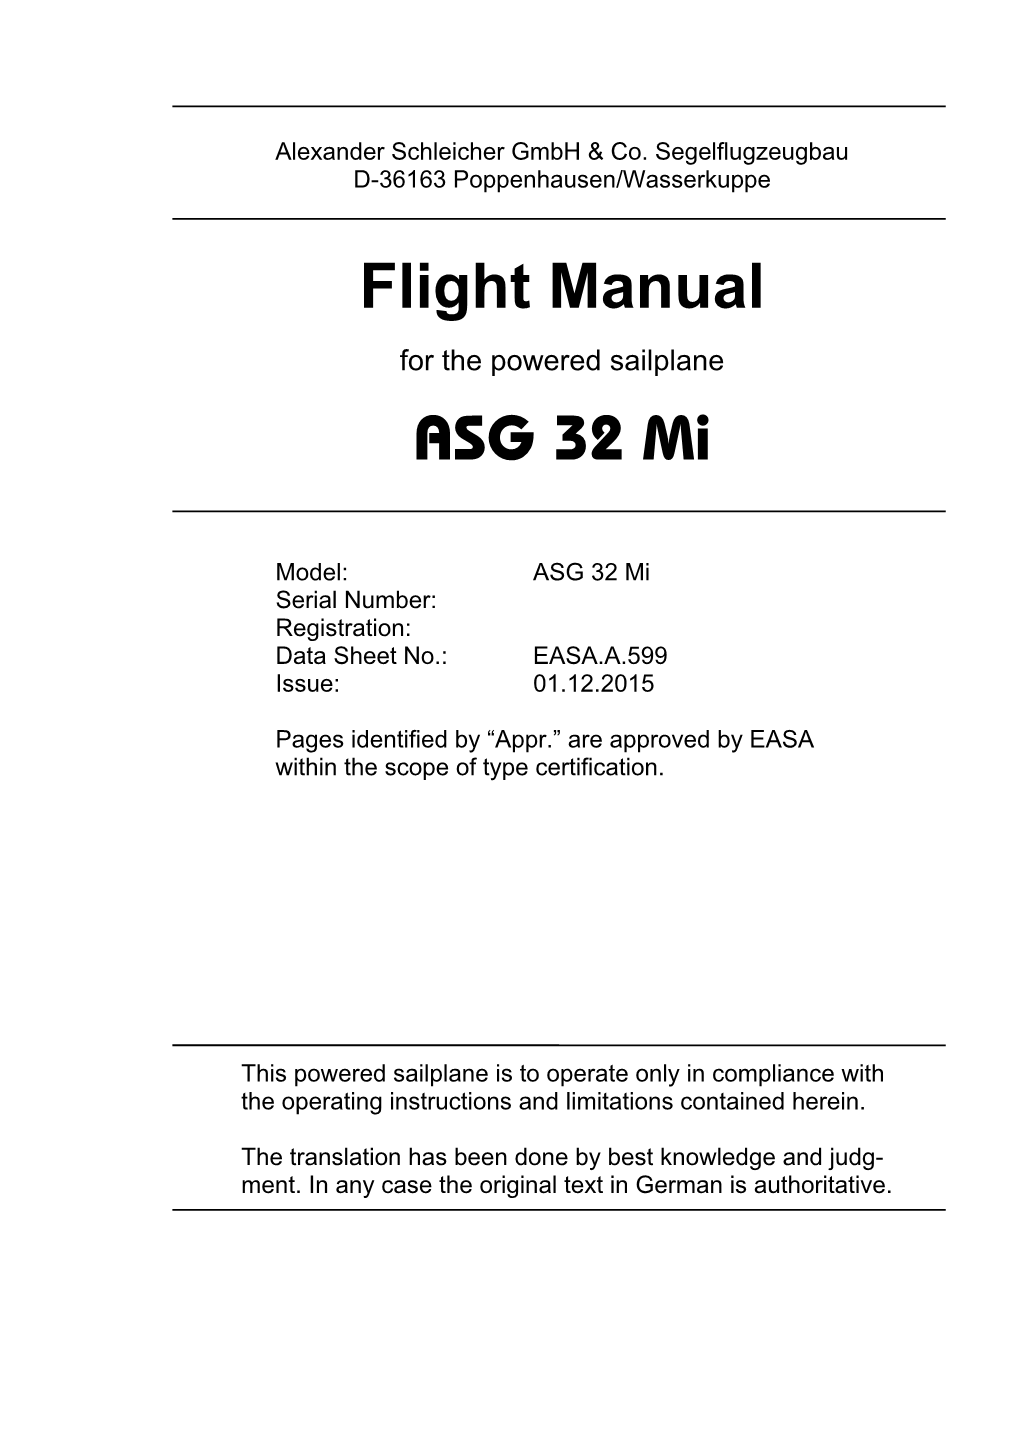 Flight Manual ASG 32 Mi Flight Manual